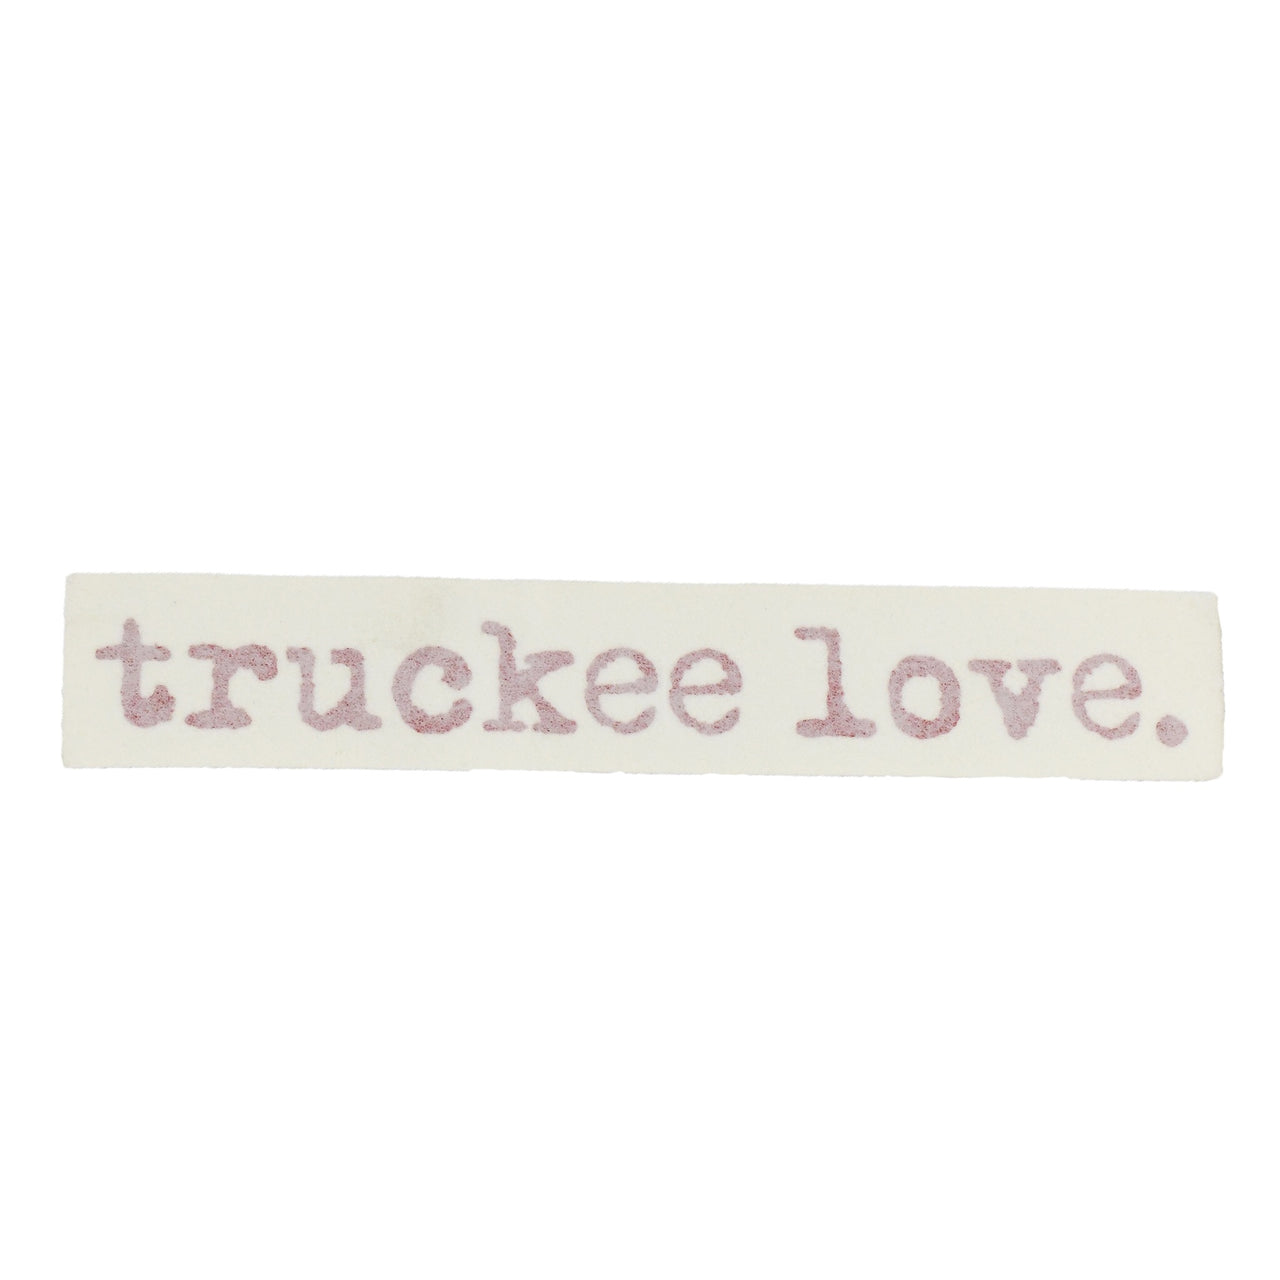 truckee love.